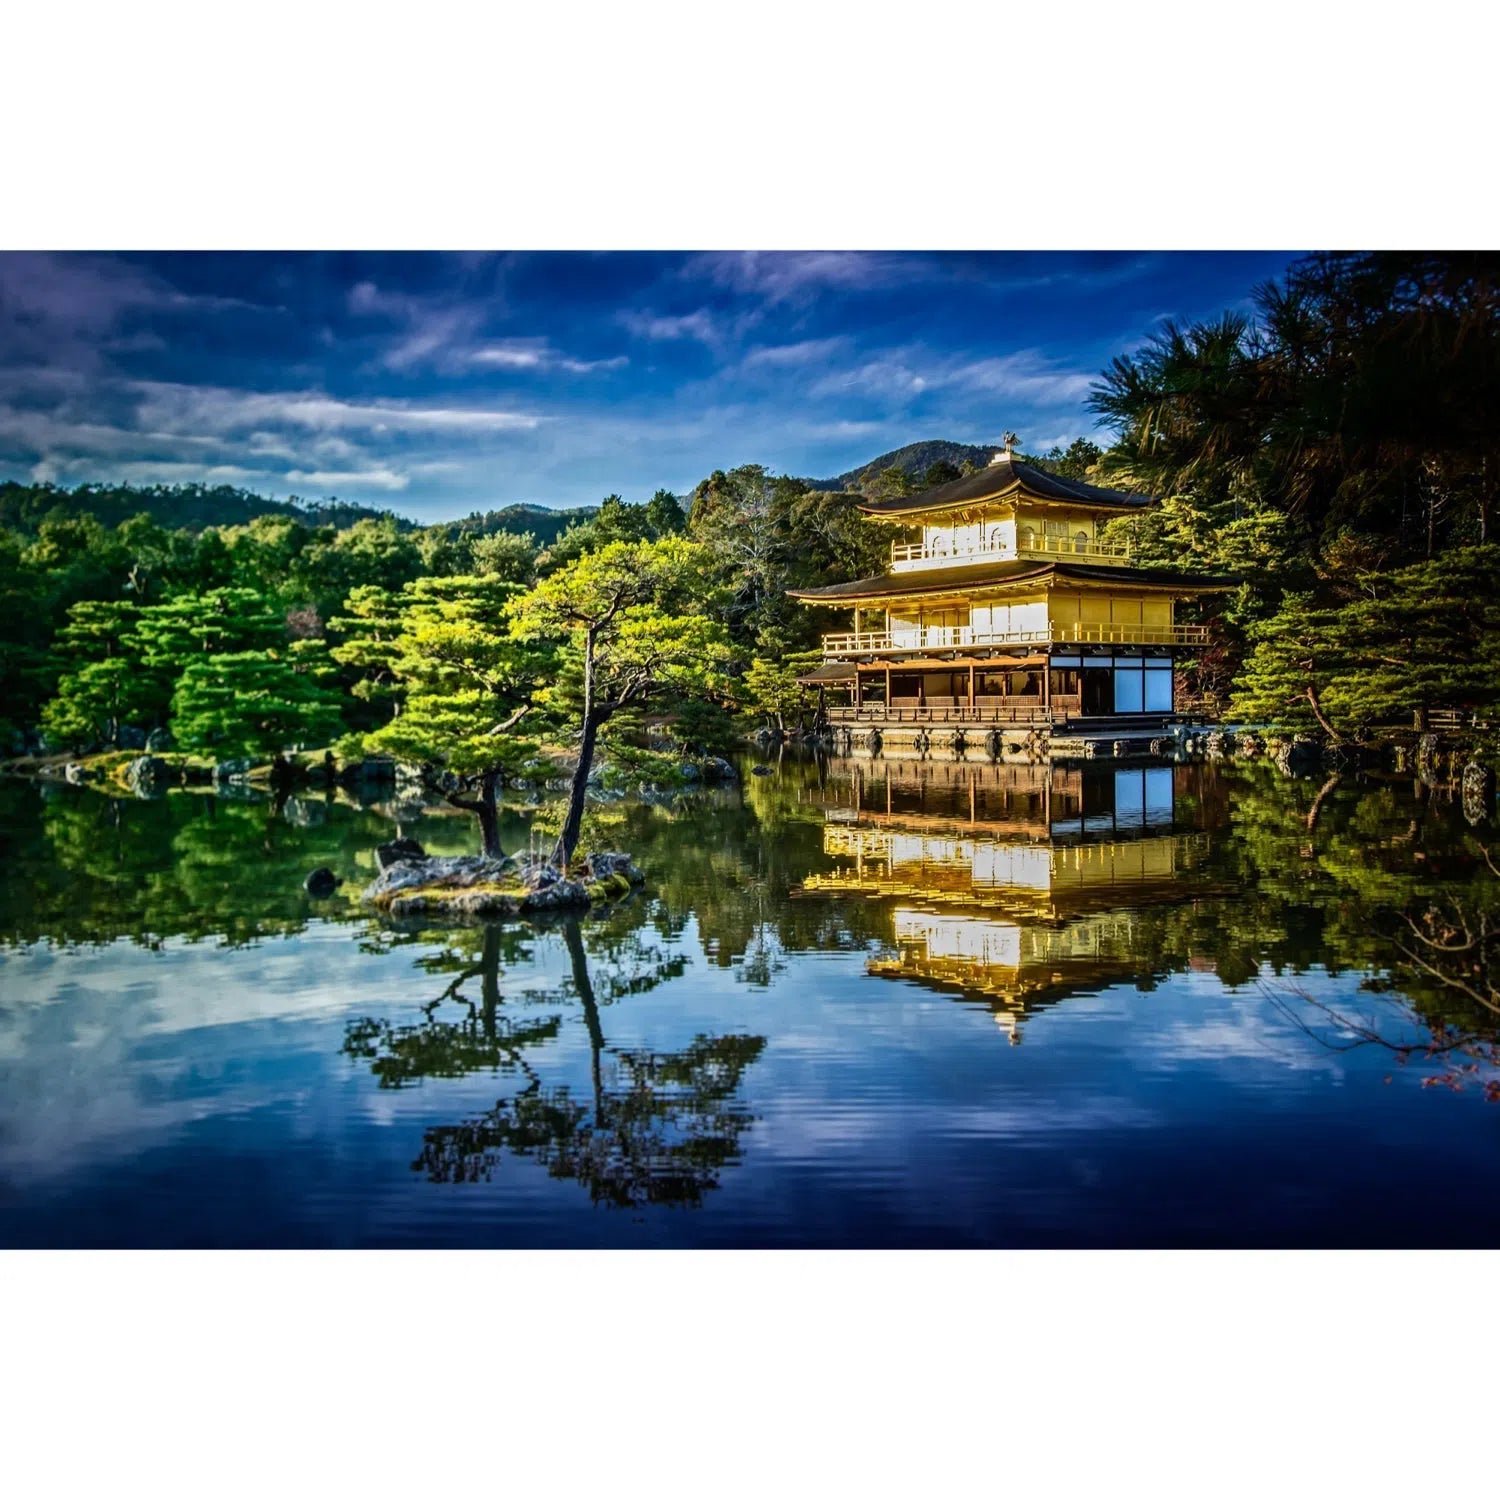 Kyoto, Kinkaku-ji Golden Pavilion-Imagesdartistes